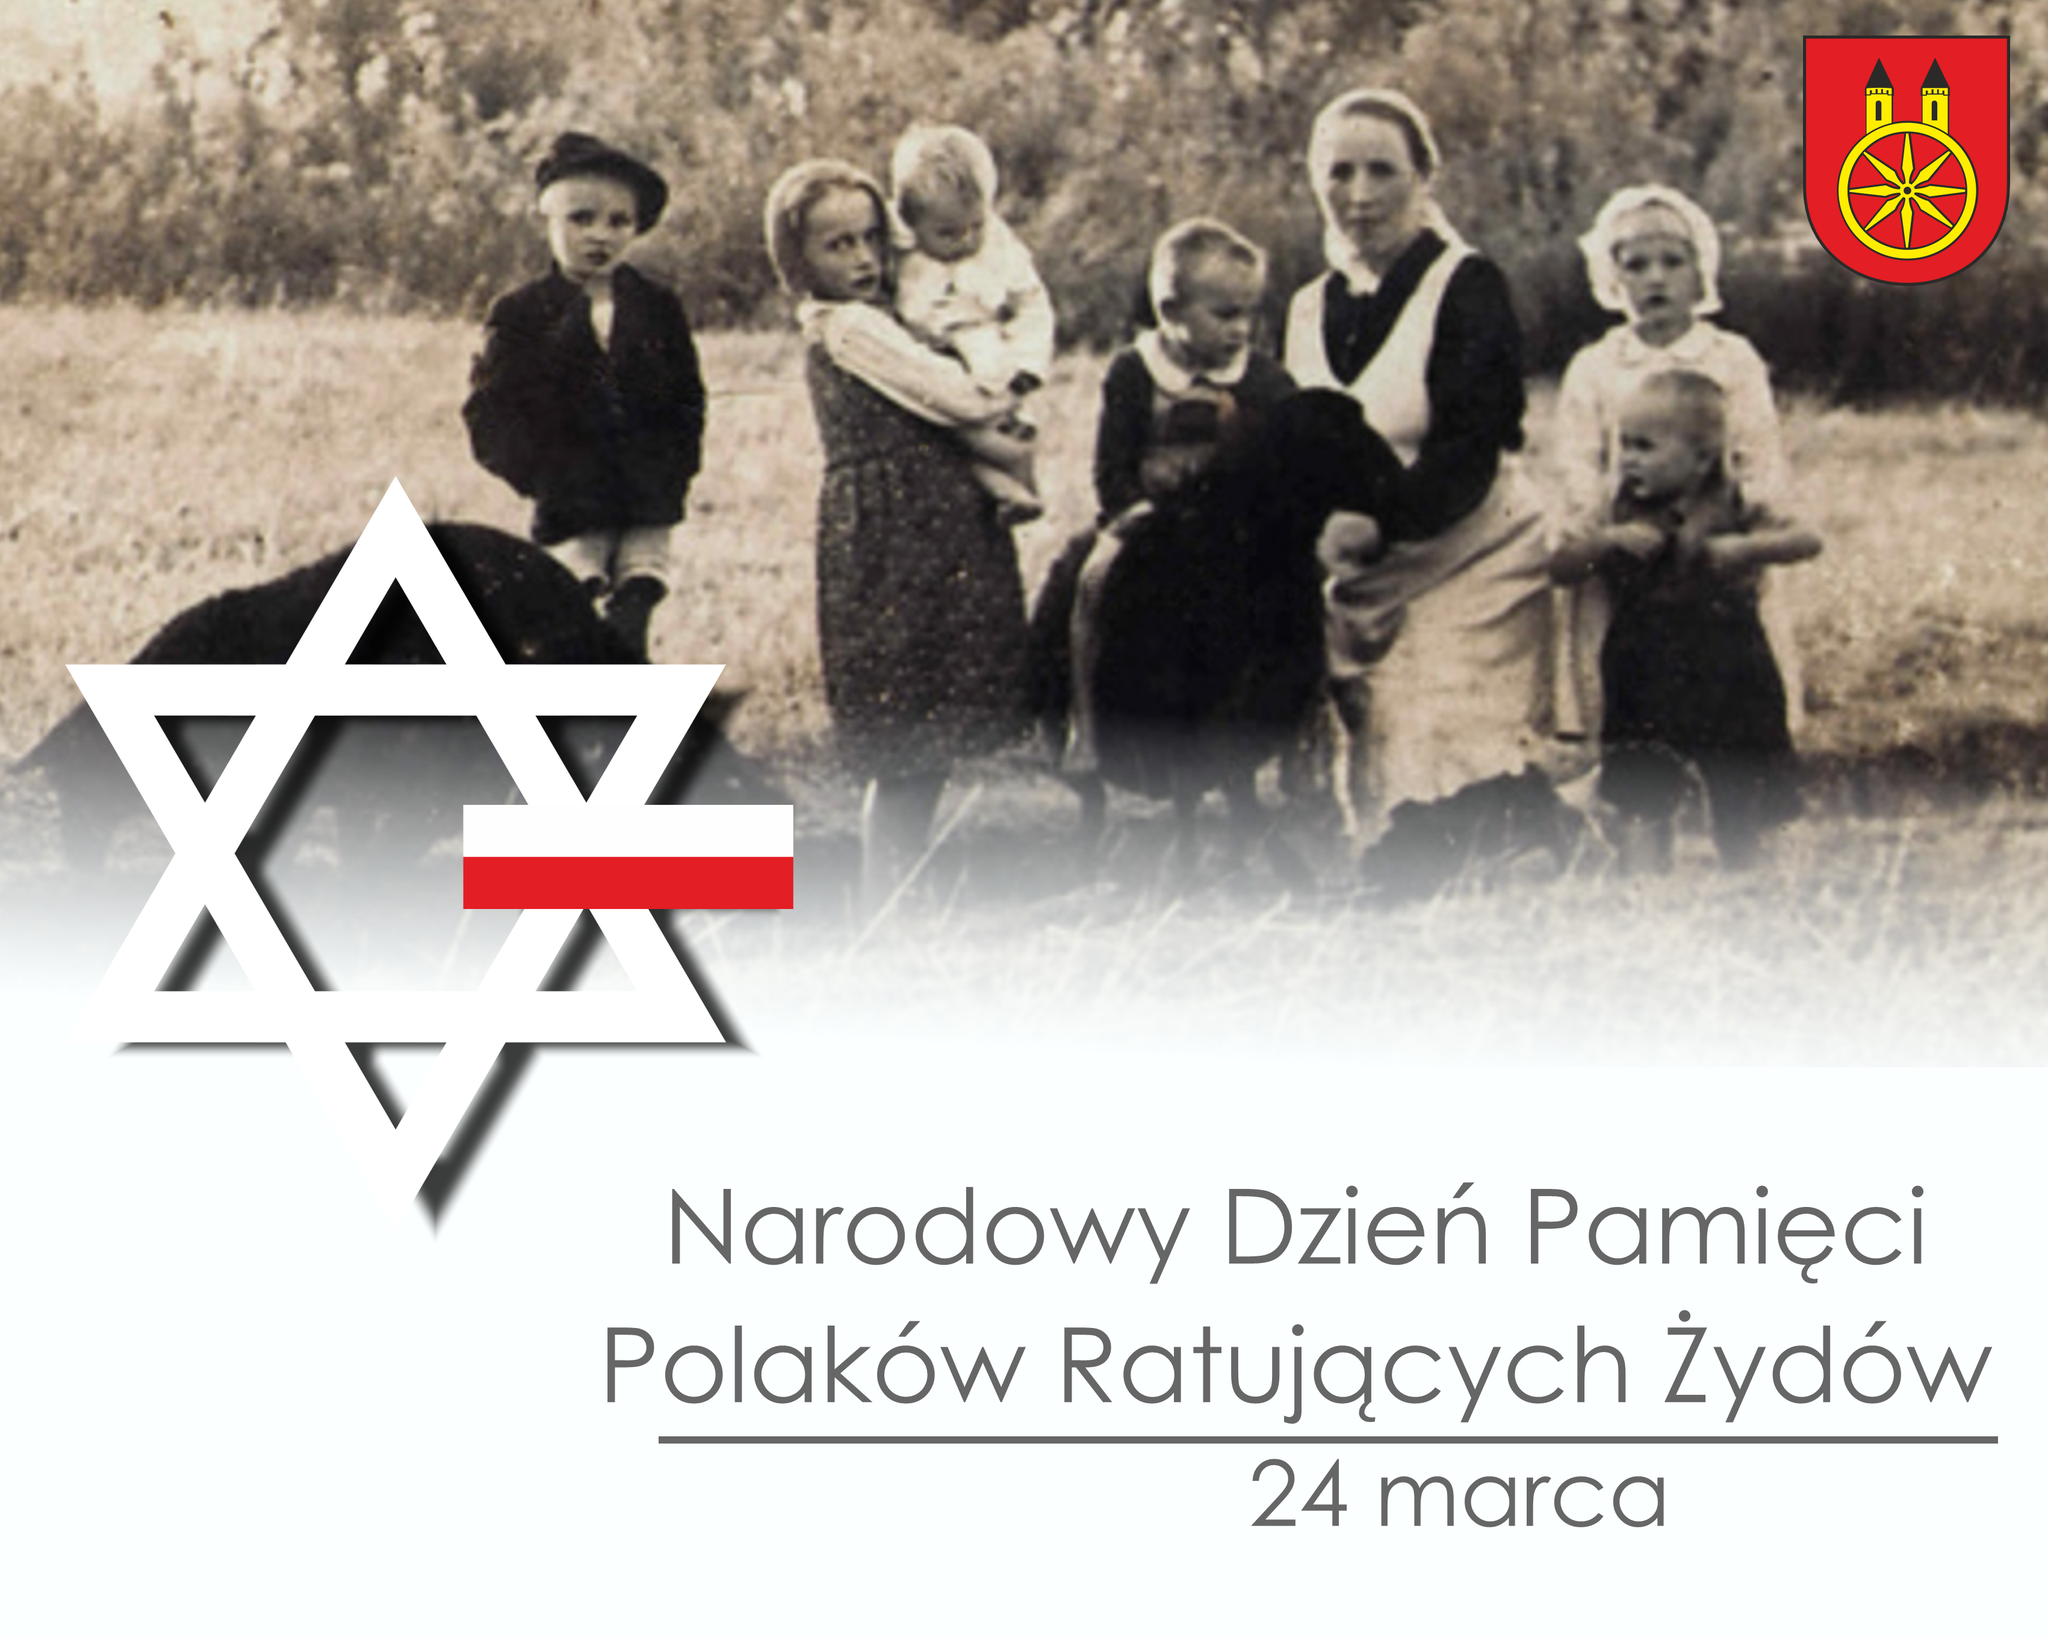 Plansza Narodowy Dzień Pamięci Polaków ratujących Żydów, tekst pod planszą.